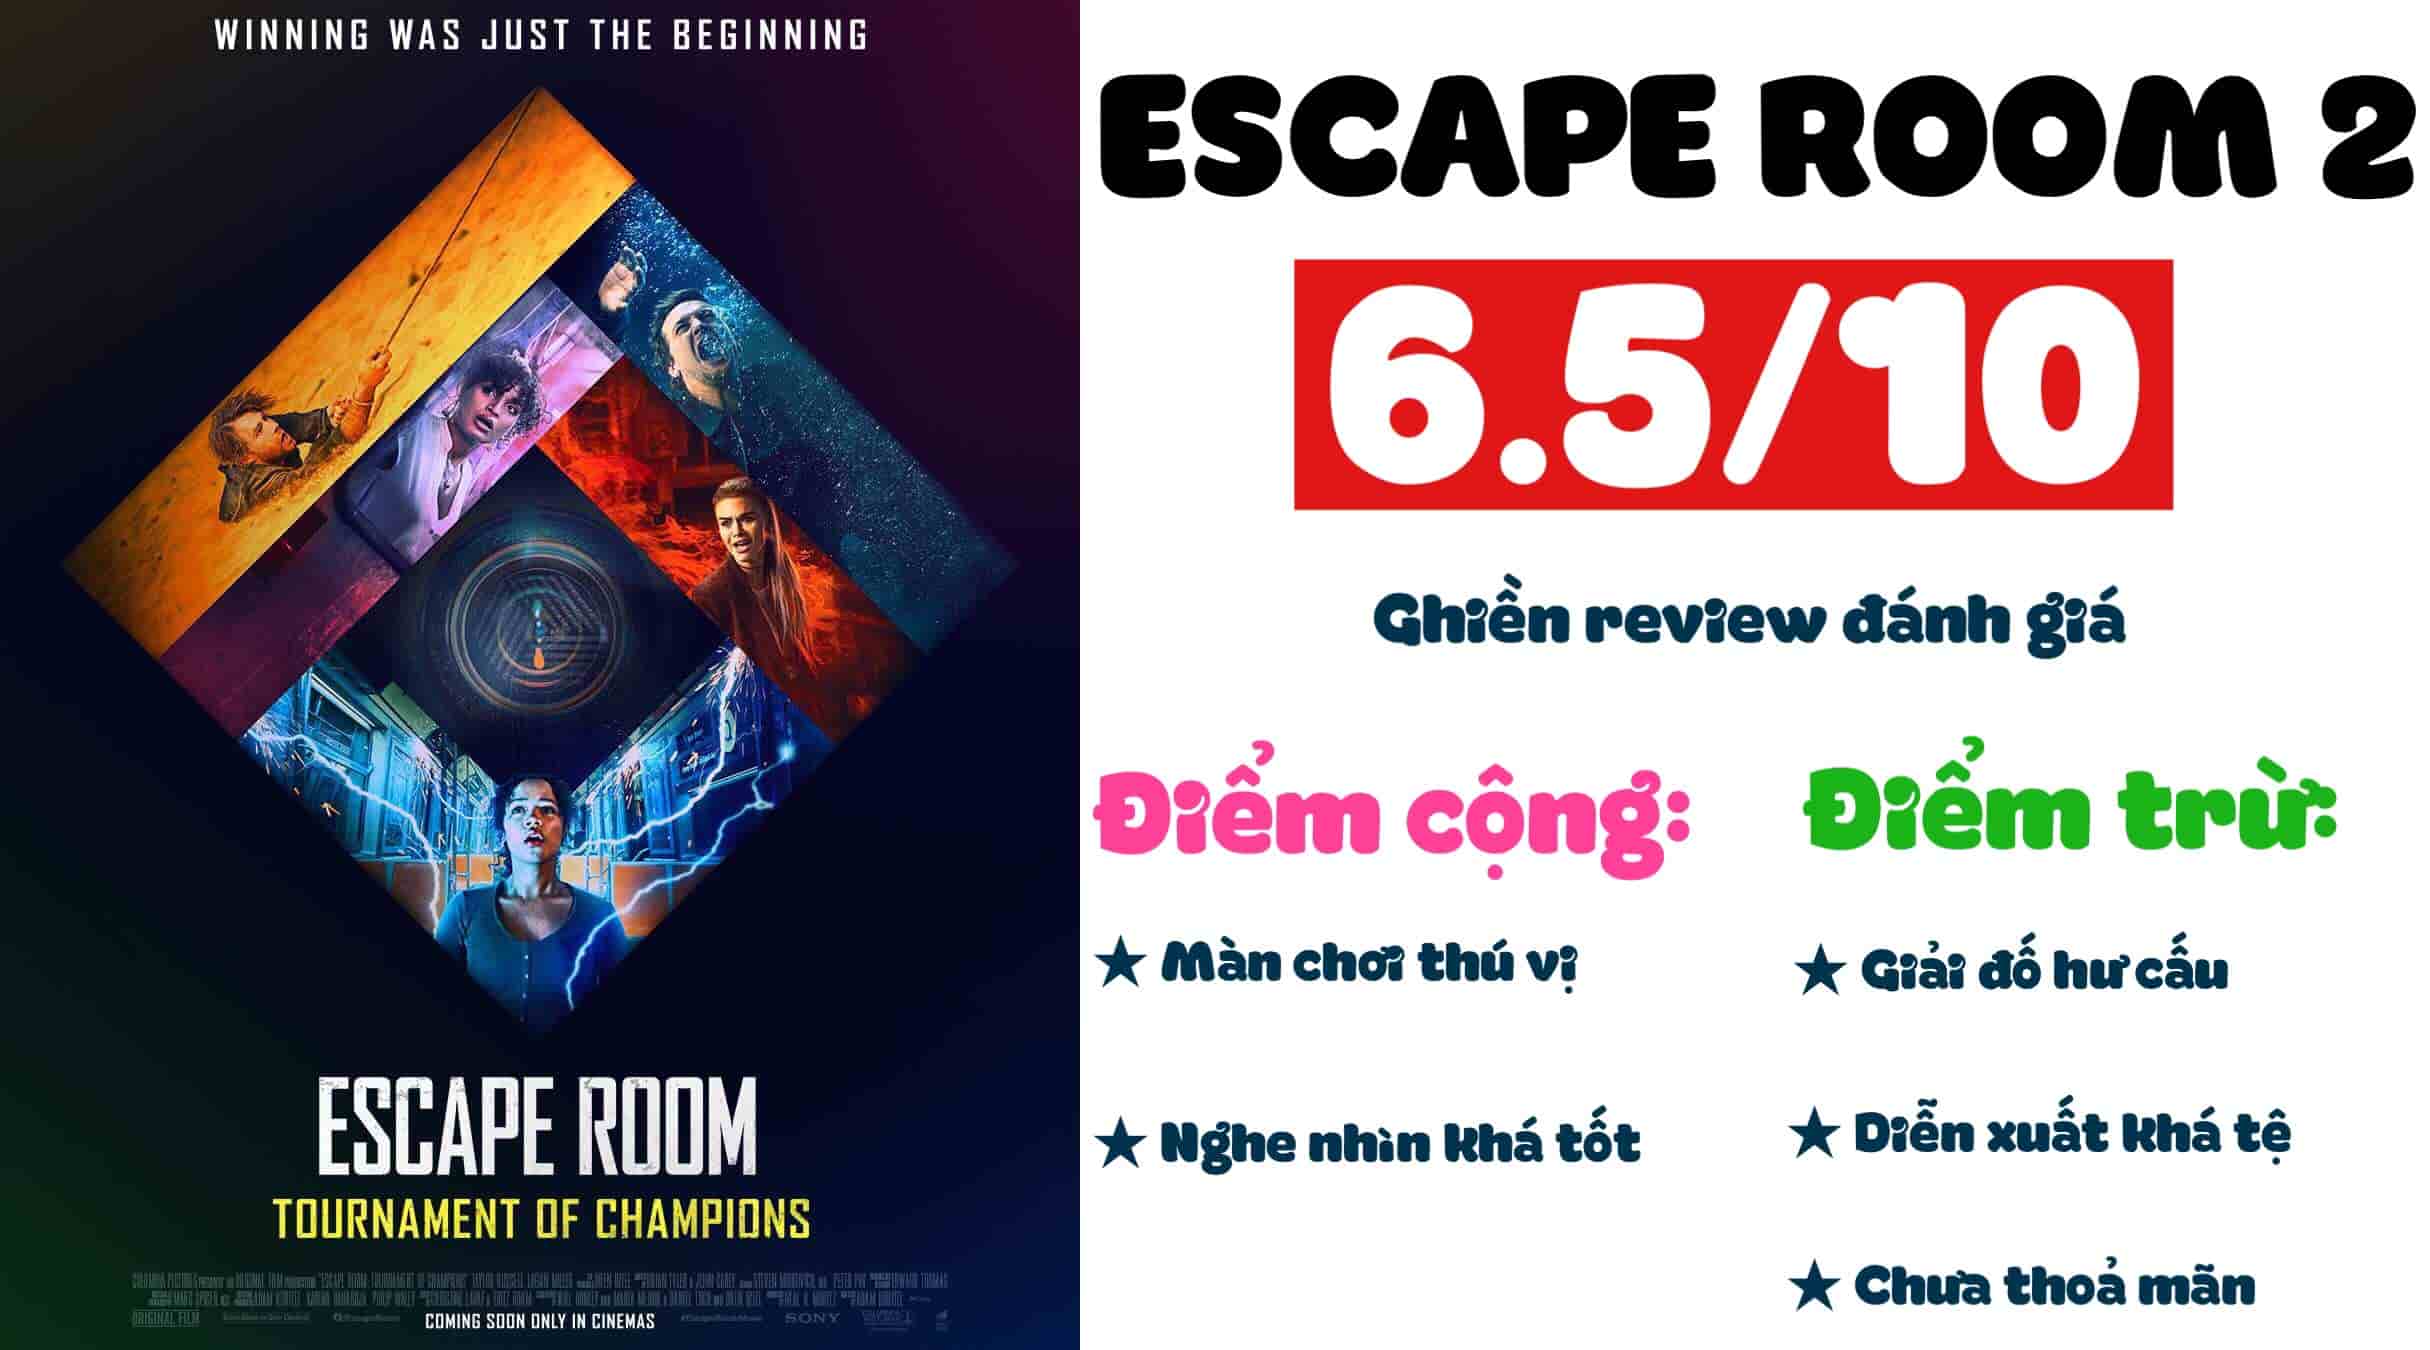 Ghien review - Escape room 2